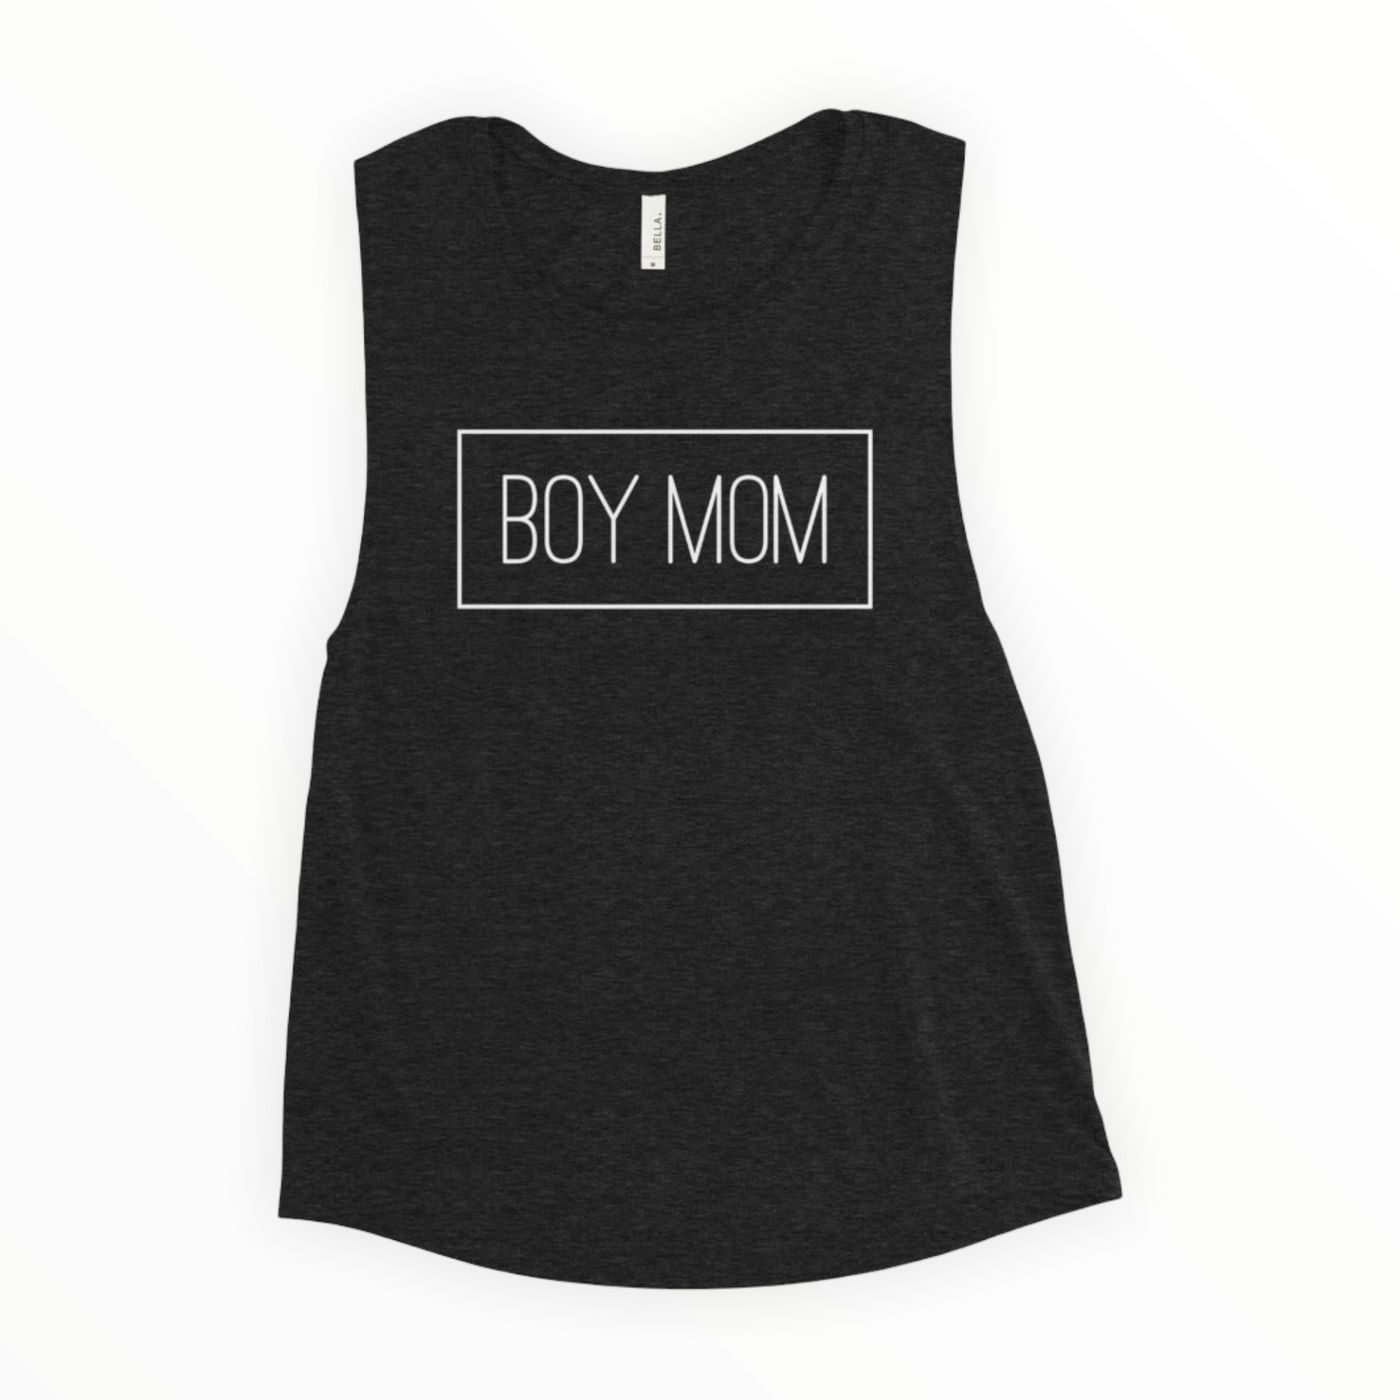 Boy Mom Ladies’ Muscle Tank